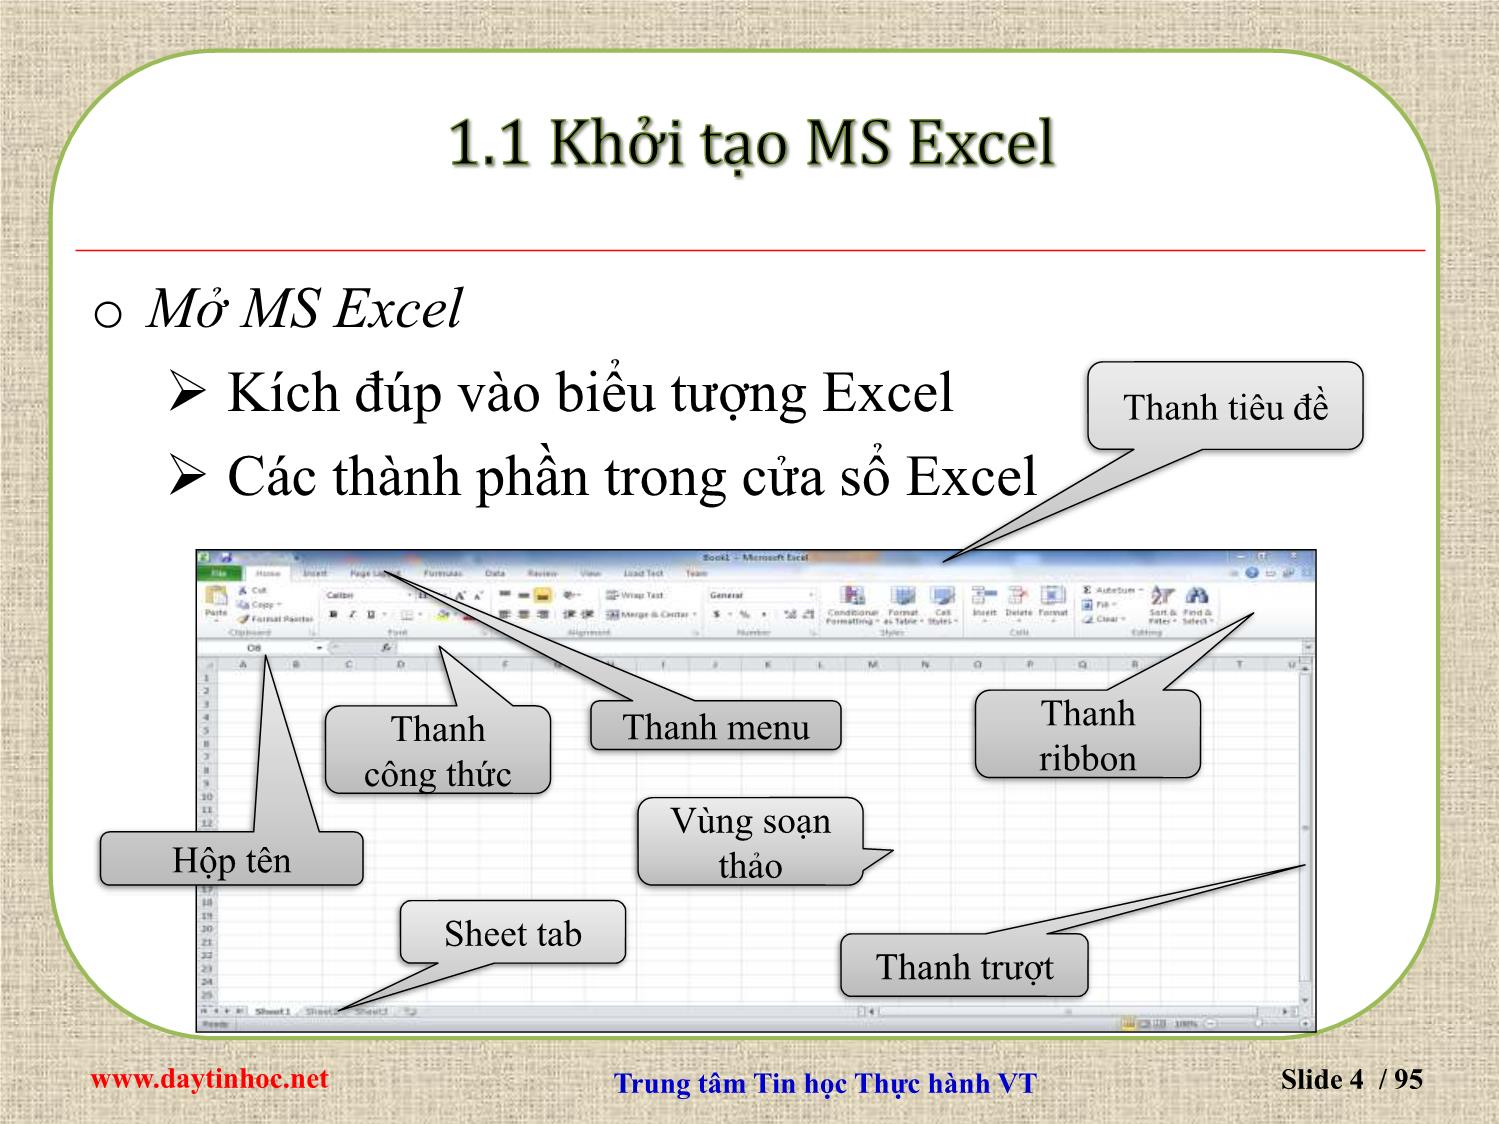 Bài giảng Microsoft Excel 2010 trang 4